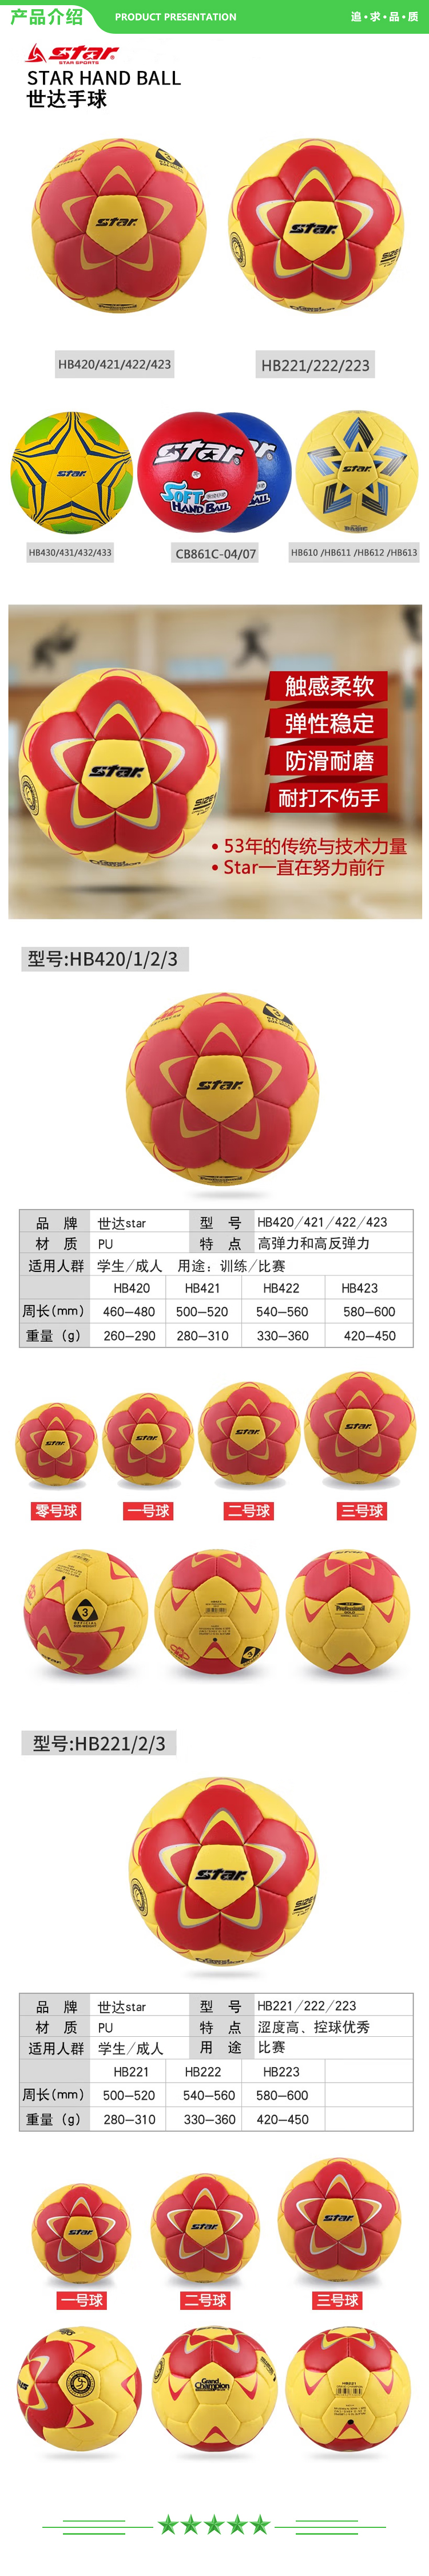 世达 star HB221 一号球 手球比赛用球防滑pu材质舒适控球比赛训练用球 .jpg